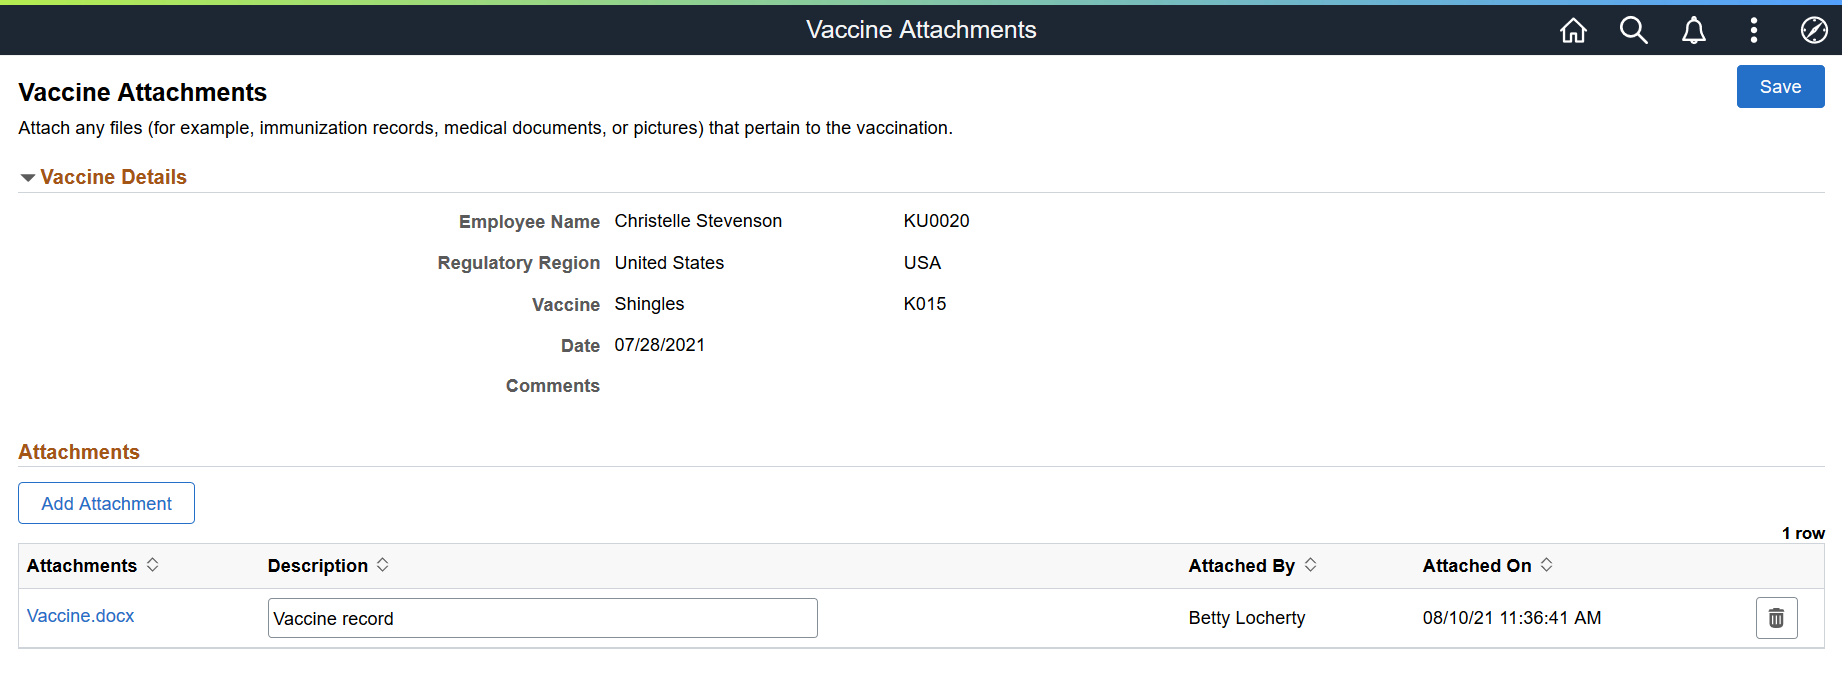 Vaccine Attachments page